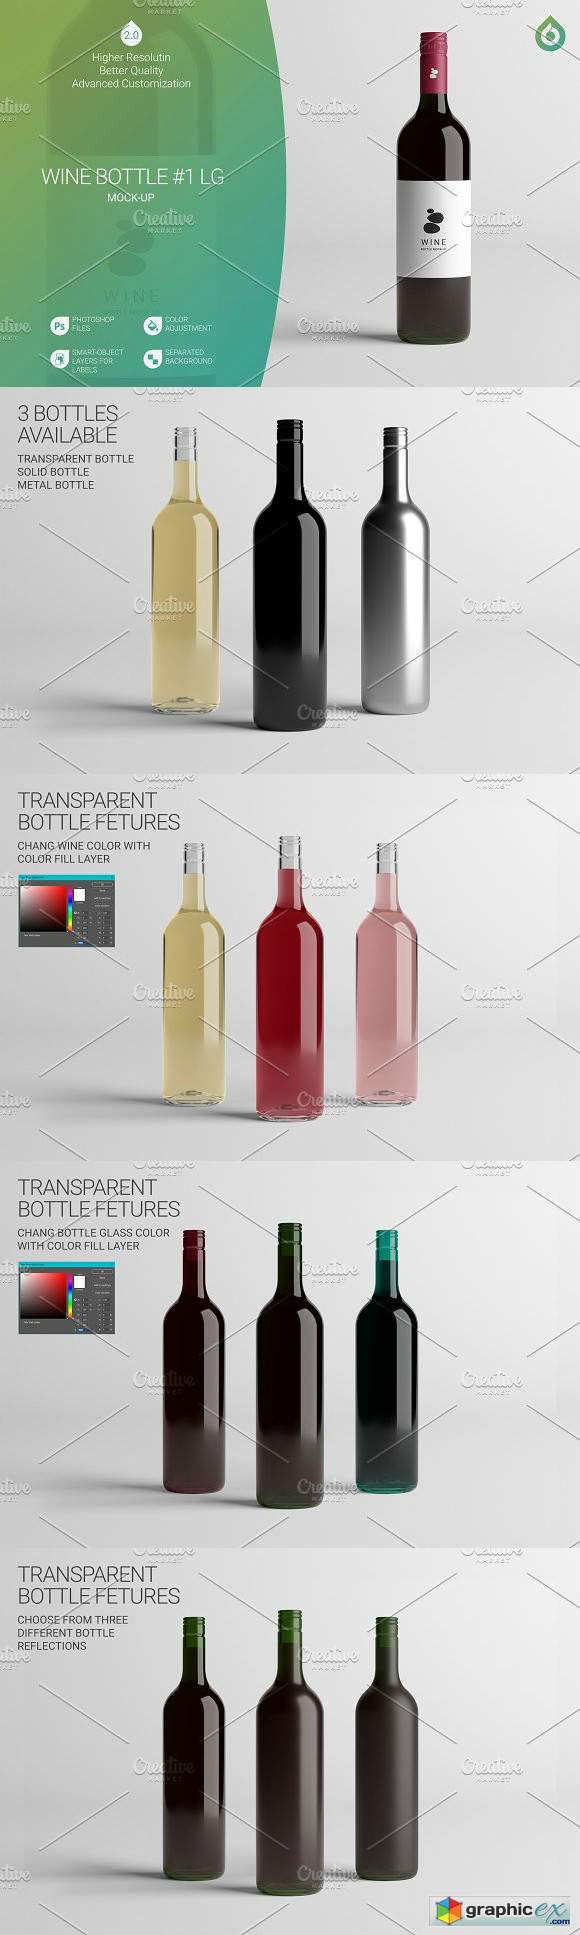 Wine Bottle LG Mock-Up 1 V2